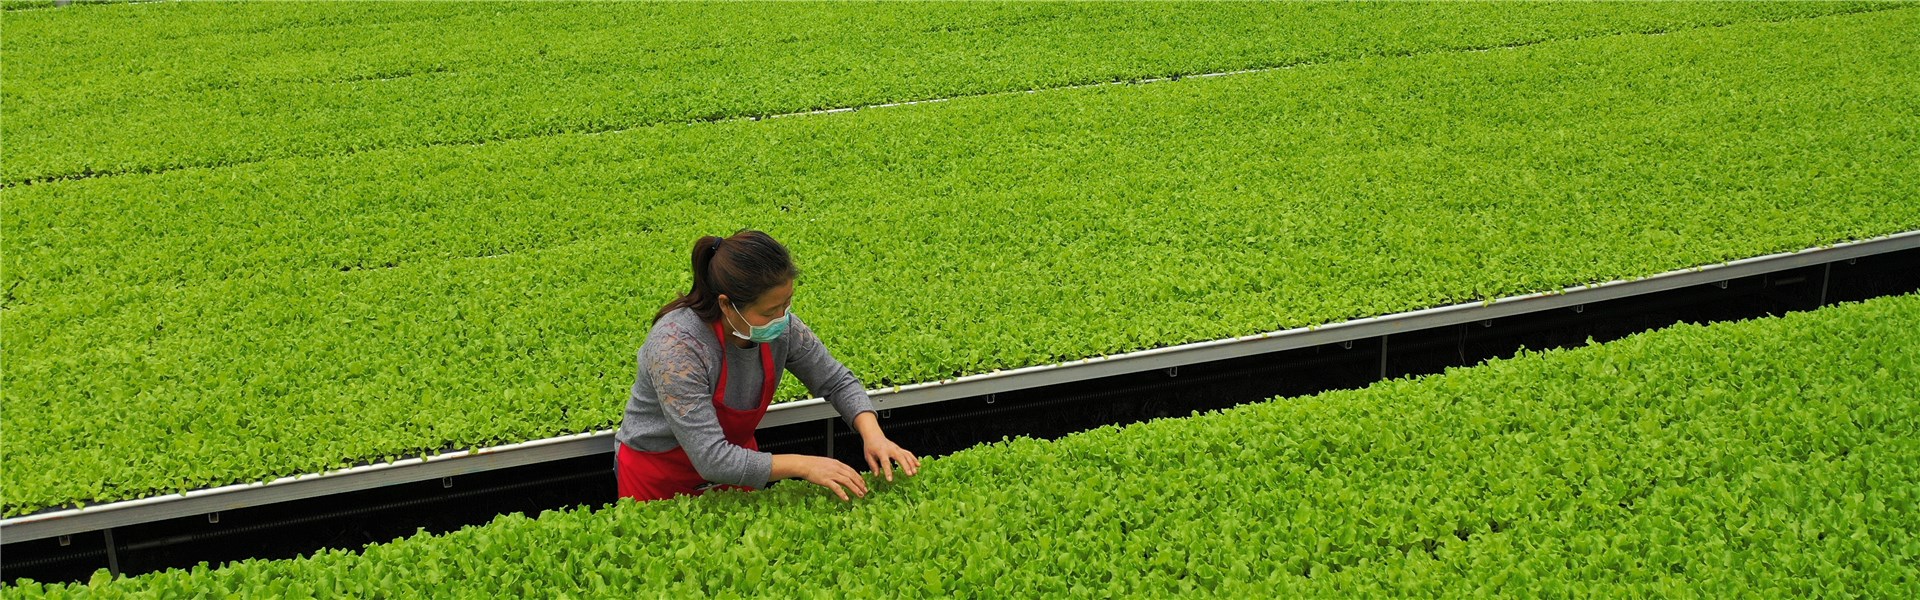 新疆：加快發展設施蔬菜保供應